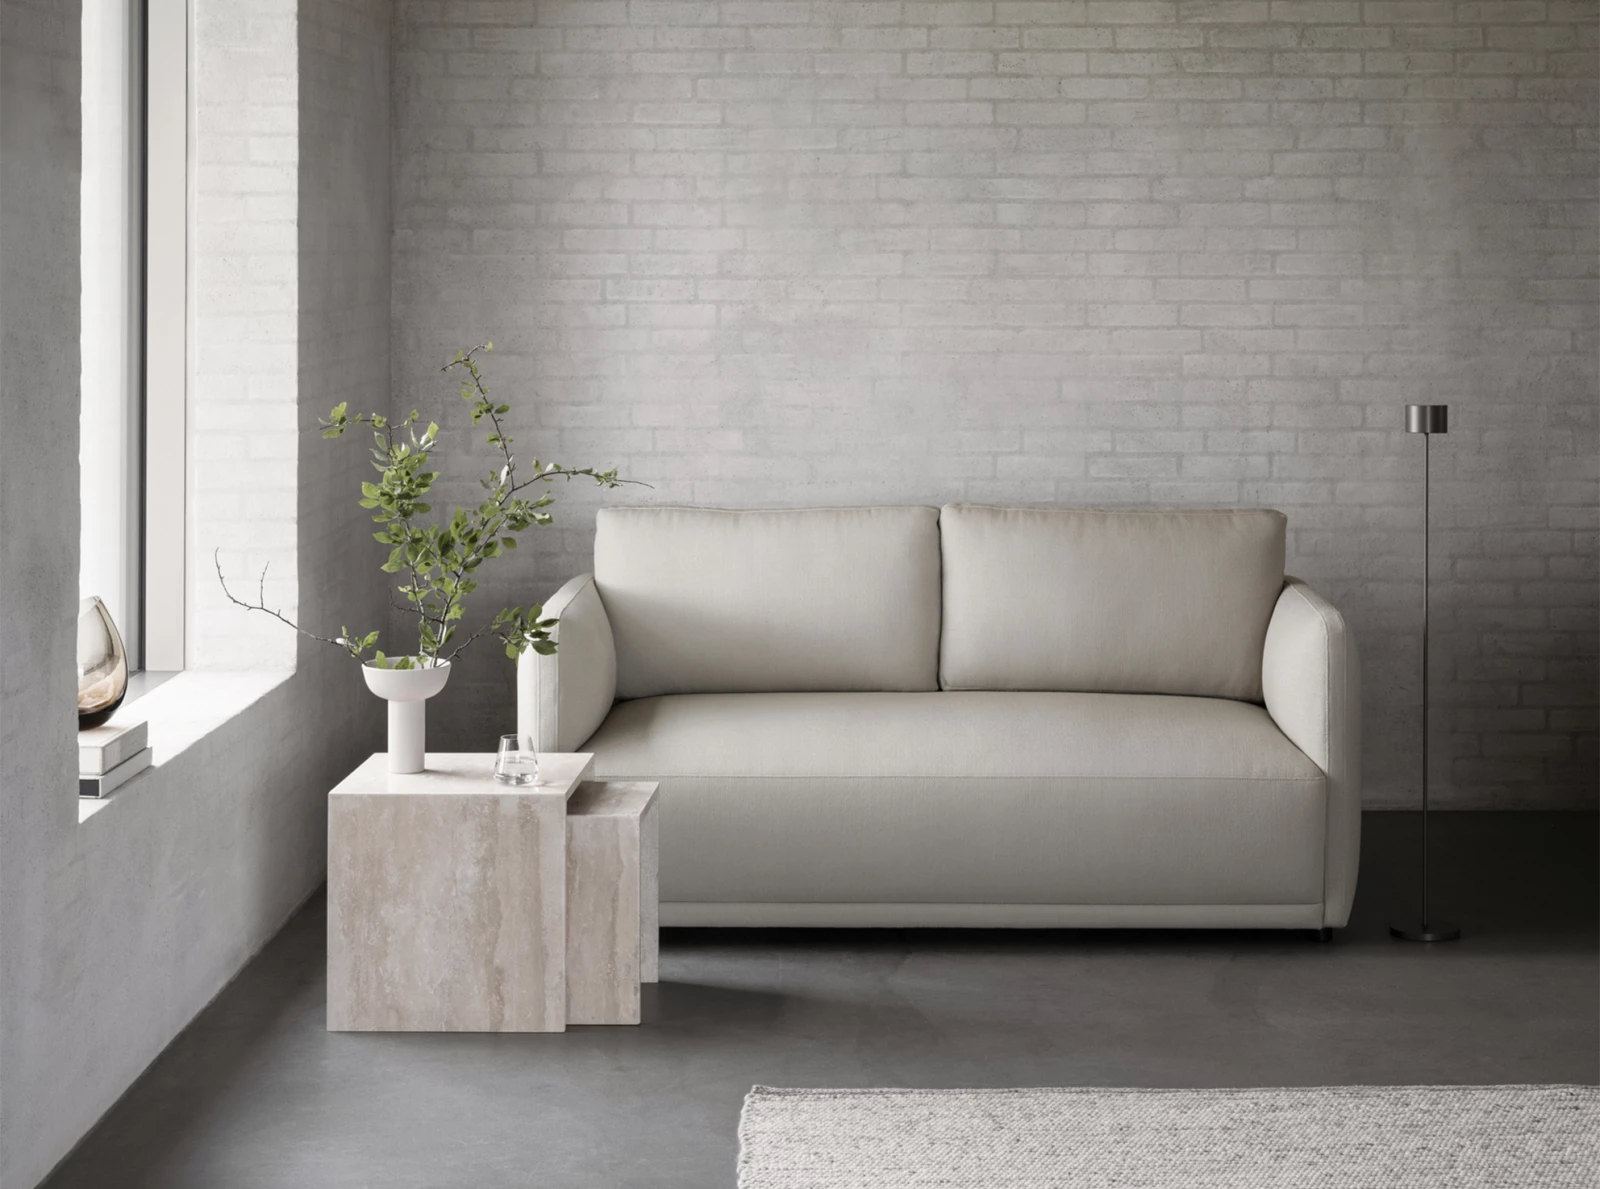 LUA indoor sofa series